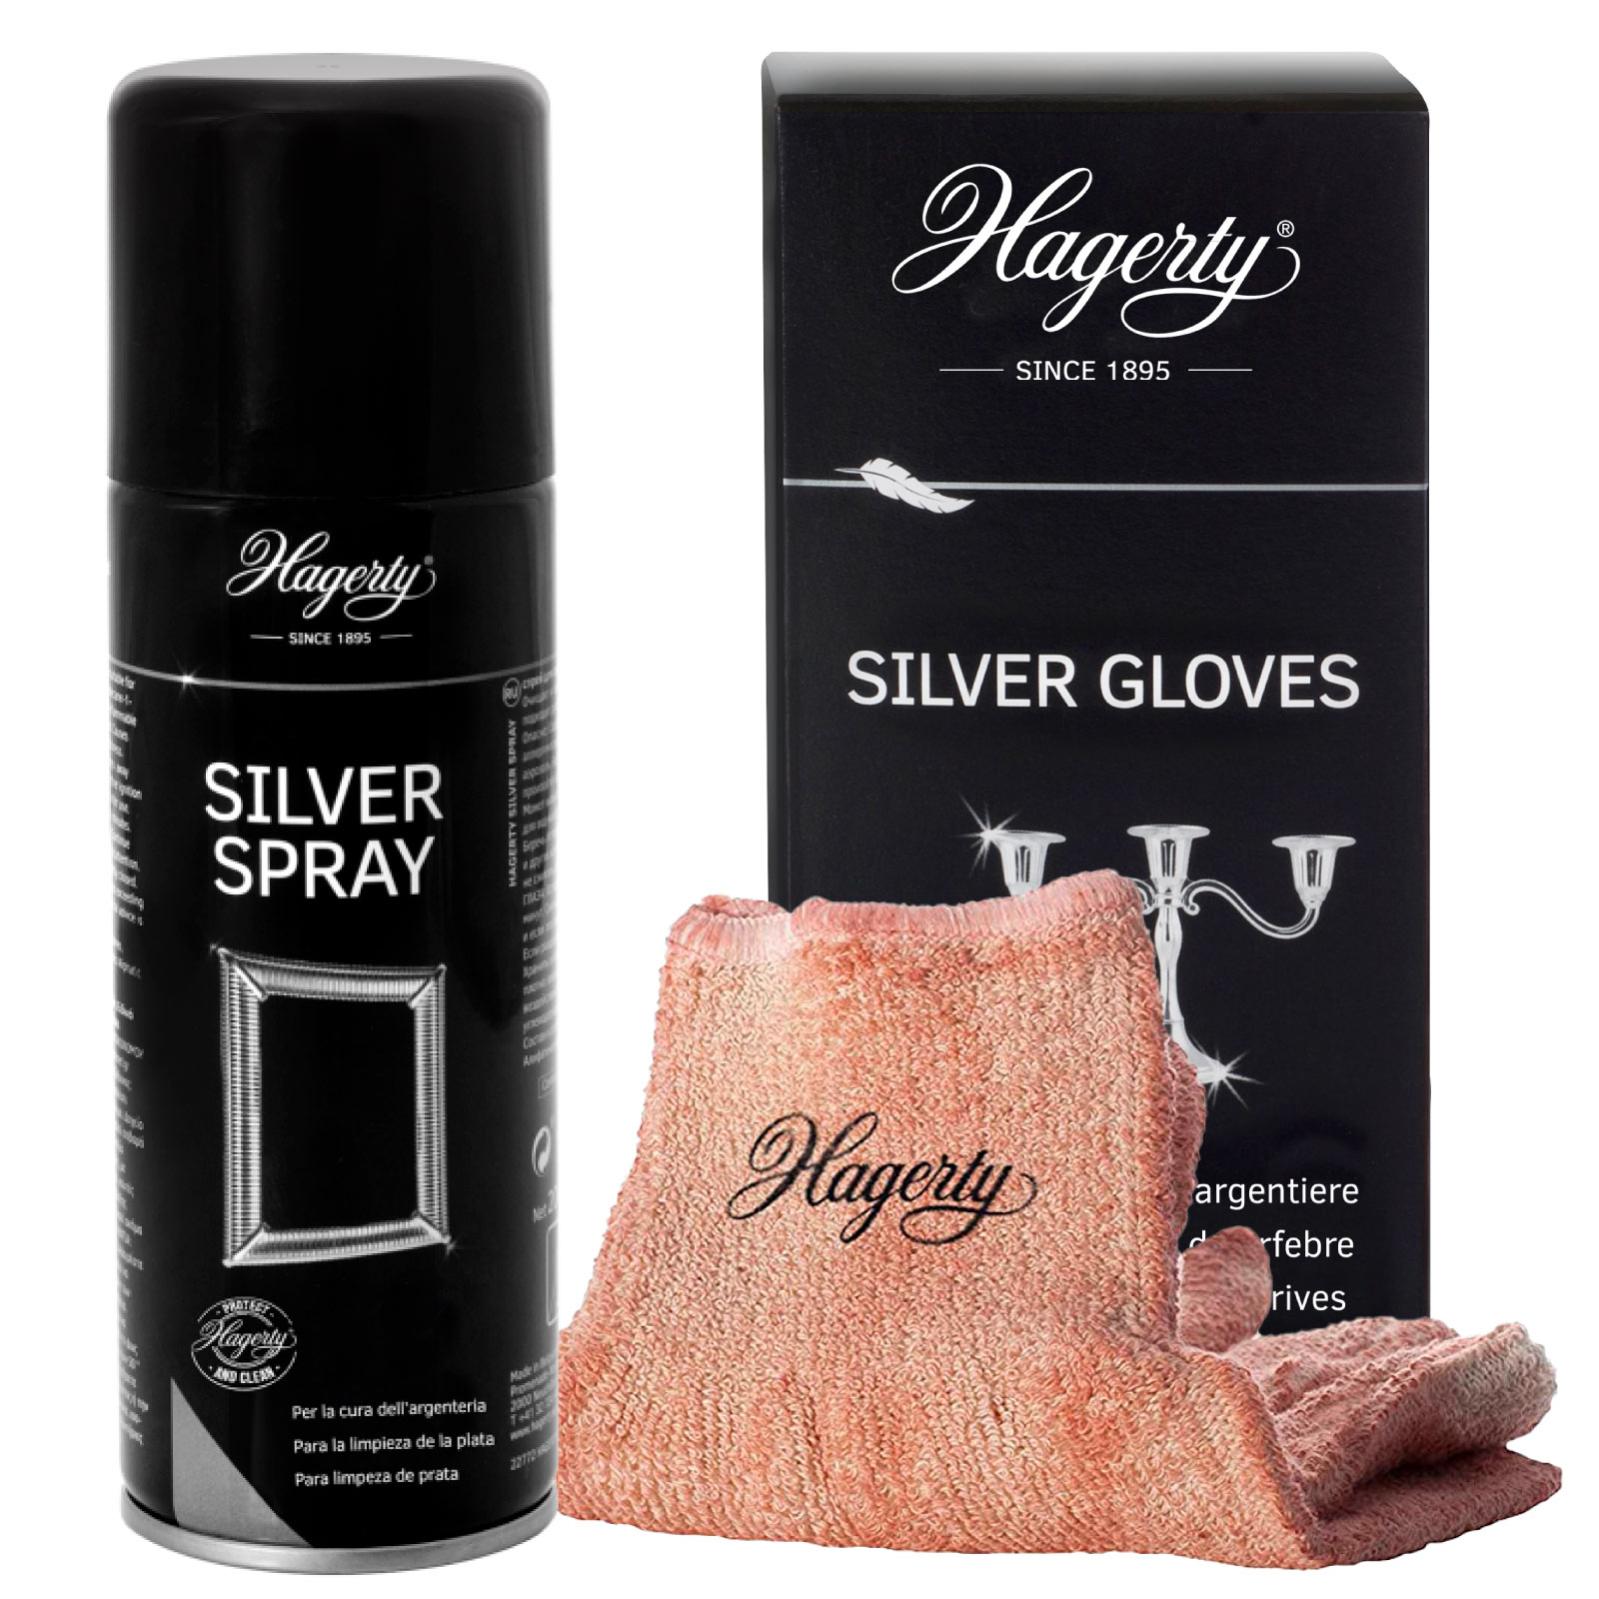 Kit Hagerty Silver Gloves Guanti da Argentiere per Pulizia Argento e  Metalli Argentati + Hagerty Silver Spray Pulitore per Argenteria da 200 ml